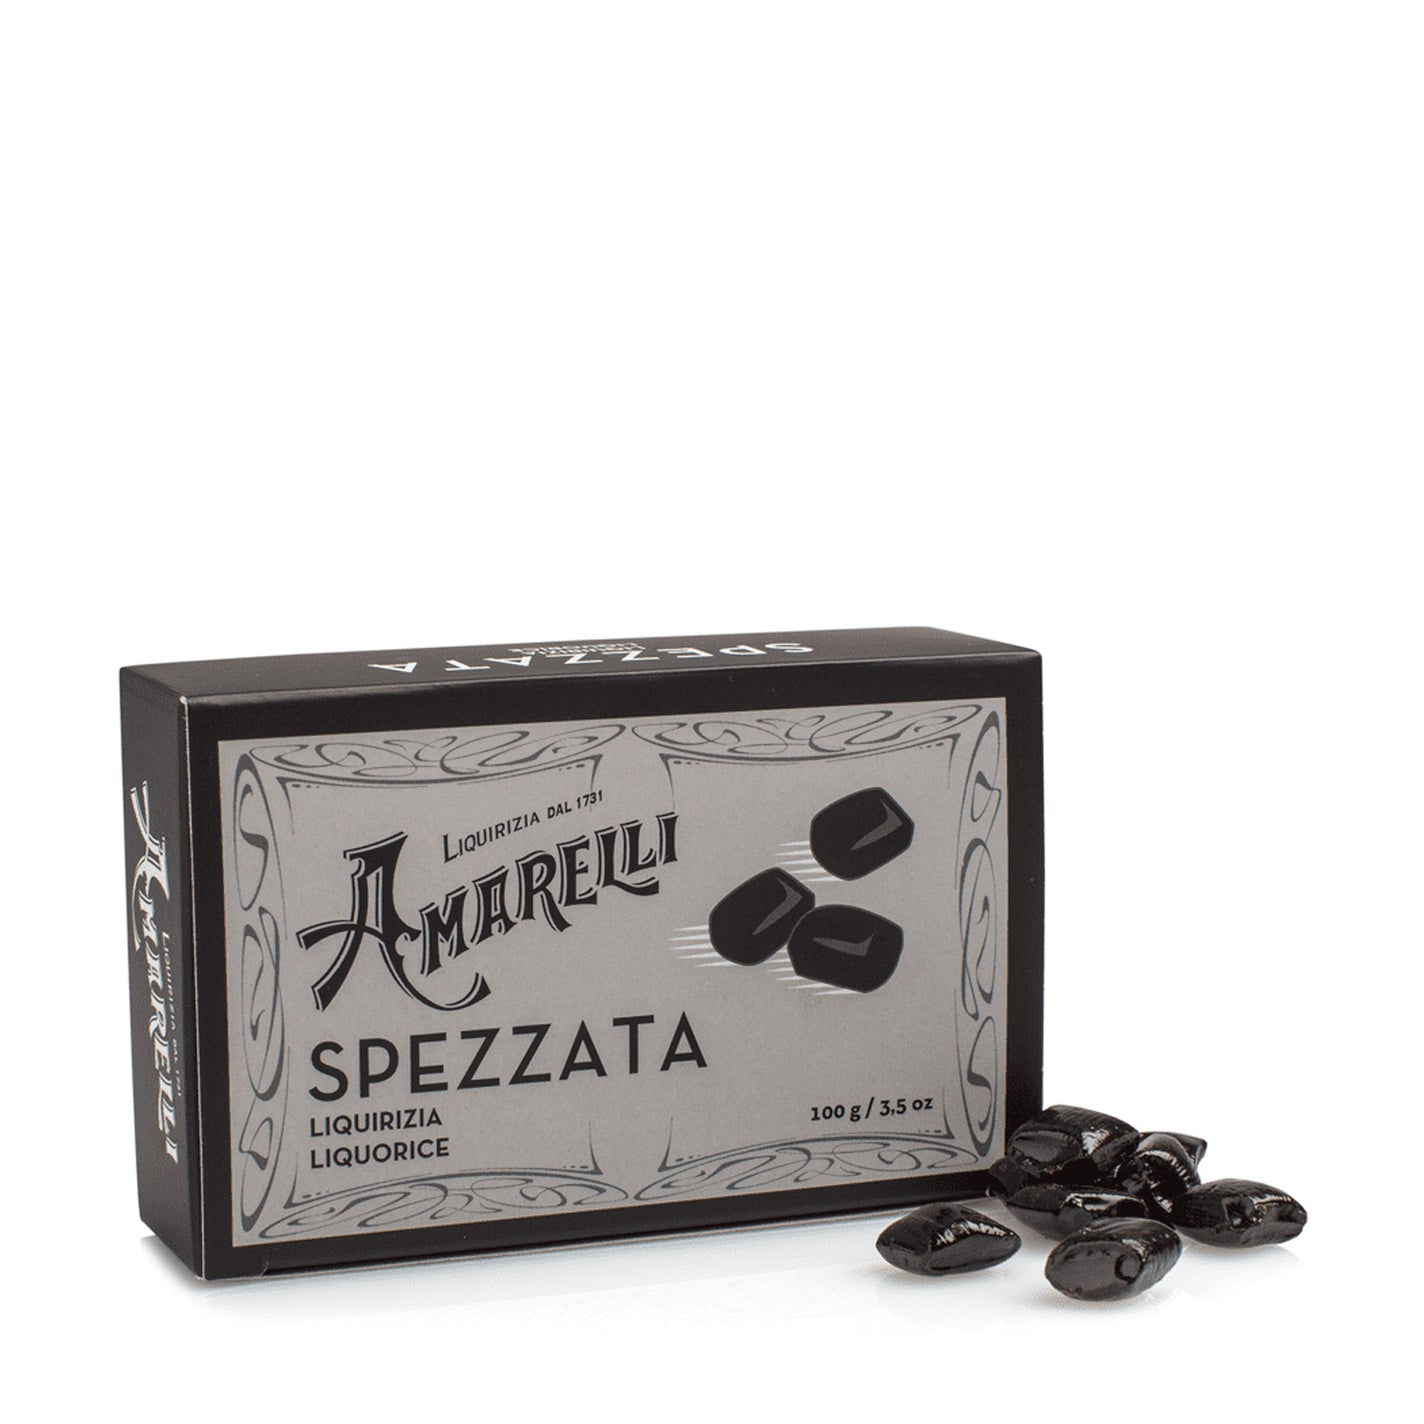 Amarelli Spezzata Pure Liquorice Box (Black) - 100g